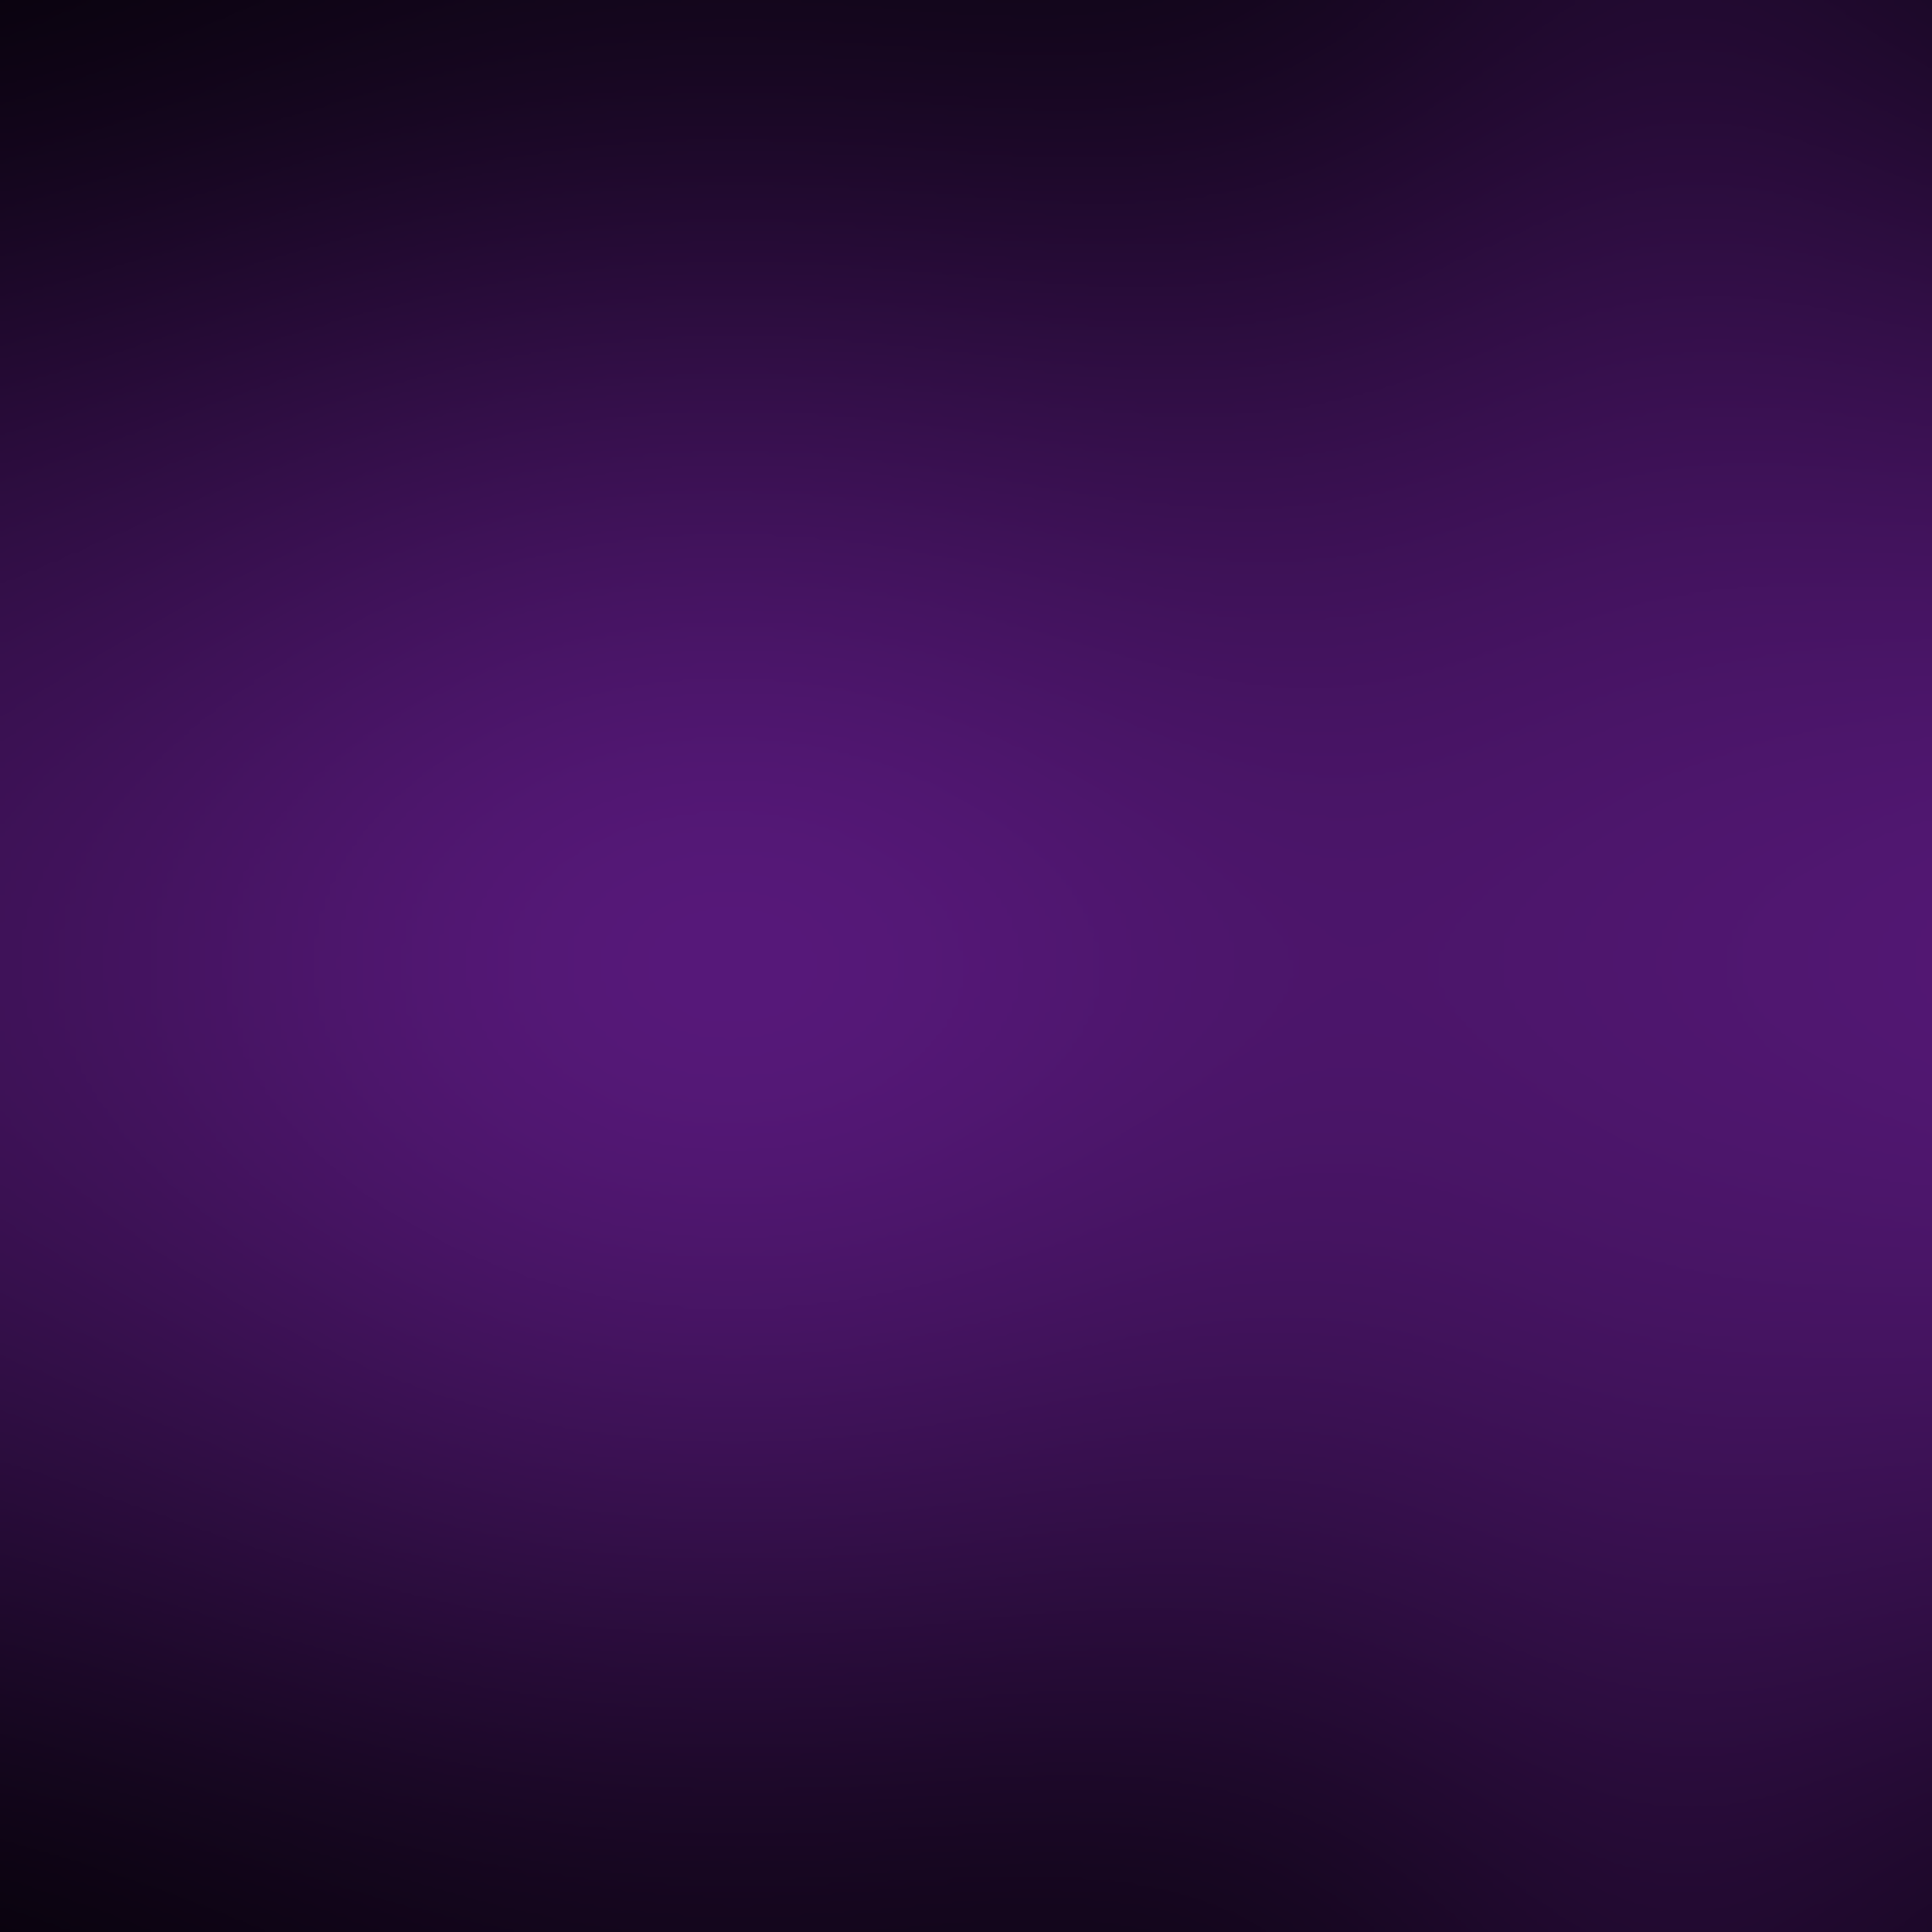 Purple Gradient Background